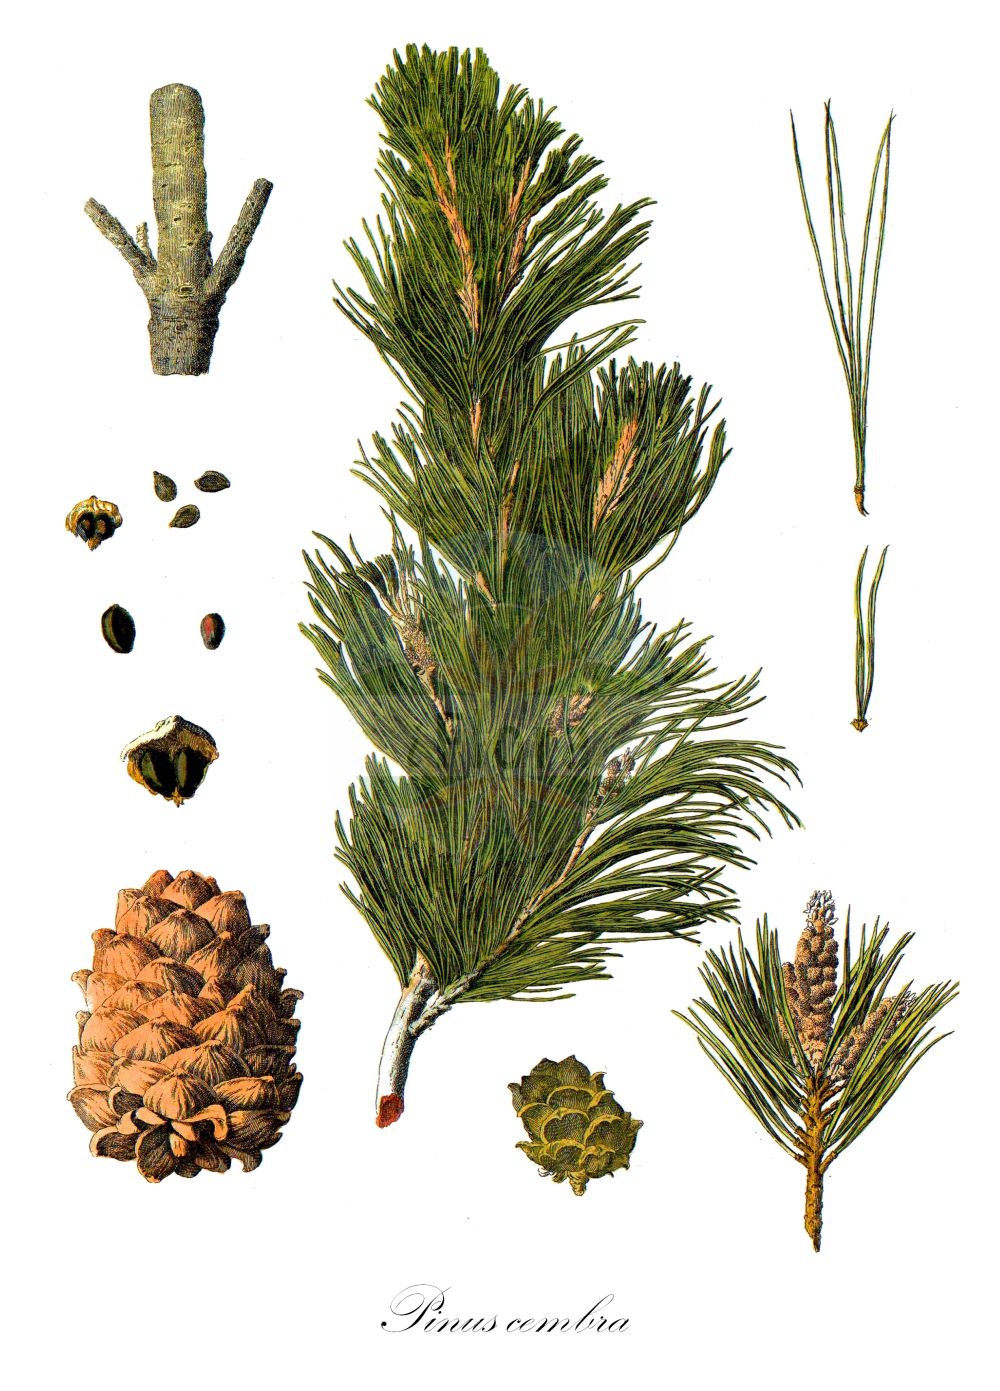 Historische Abbildung von Pinus cembra (Zirbel-Kiefer - Arolla Pine). ---- Historical Drawing of Pinus cembra (Zirbel-Kiefer - Arolla Pine).(Pinus cembra,Zirbel-Kiefer,Arolla Pine,Pinus cembra,Zirbel-Kiefer,Arve,Arolla Pine,Swiss Stone Pine,Alpine Stone Pine,Pinus,Kiefer,Pine,Pinaceae,Kieferngewächse,Pine family,Pallas (1784-1788))